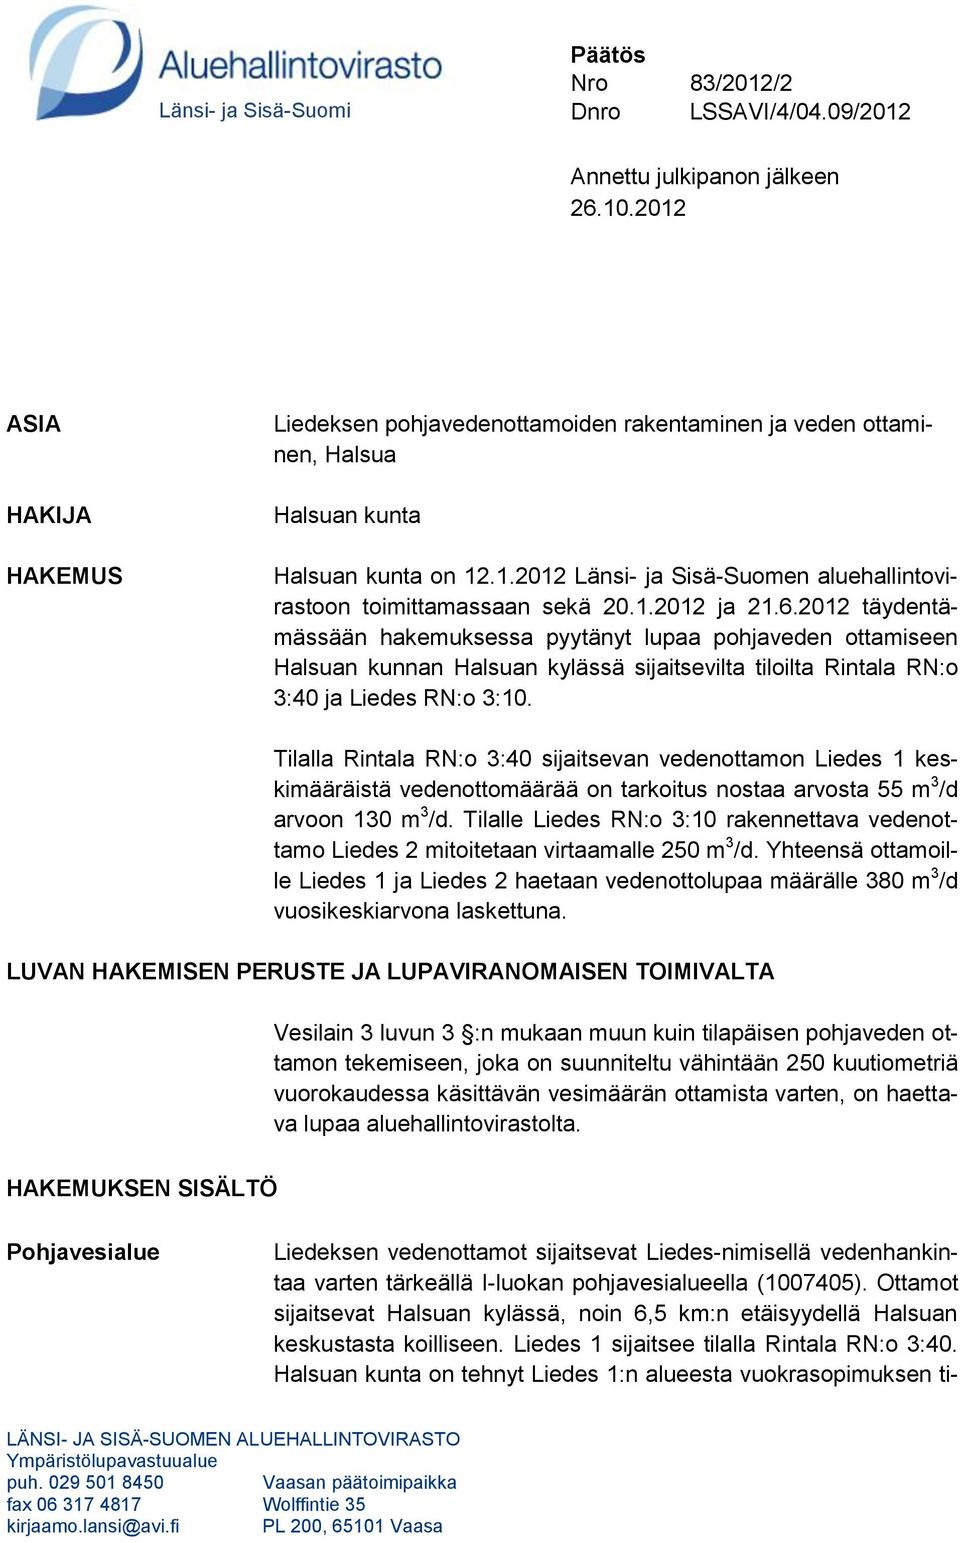 1.2012 ja 21.6.2012 täydentämässään hakemuksessa pyytänyt lupaa pohjaveden ottamiseen Halsuan kunnan Halsuan kylässä sijaitsevilta tiloilta Rintala RN:o 3:40 ja Liedes RN:o 3:10.